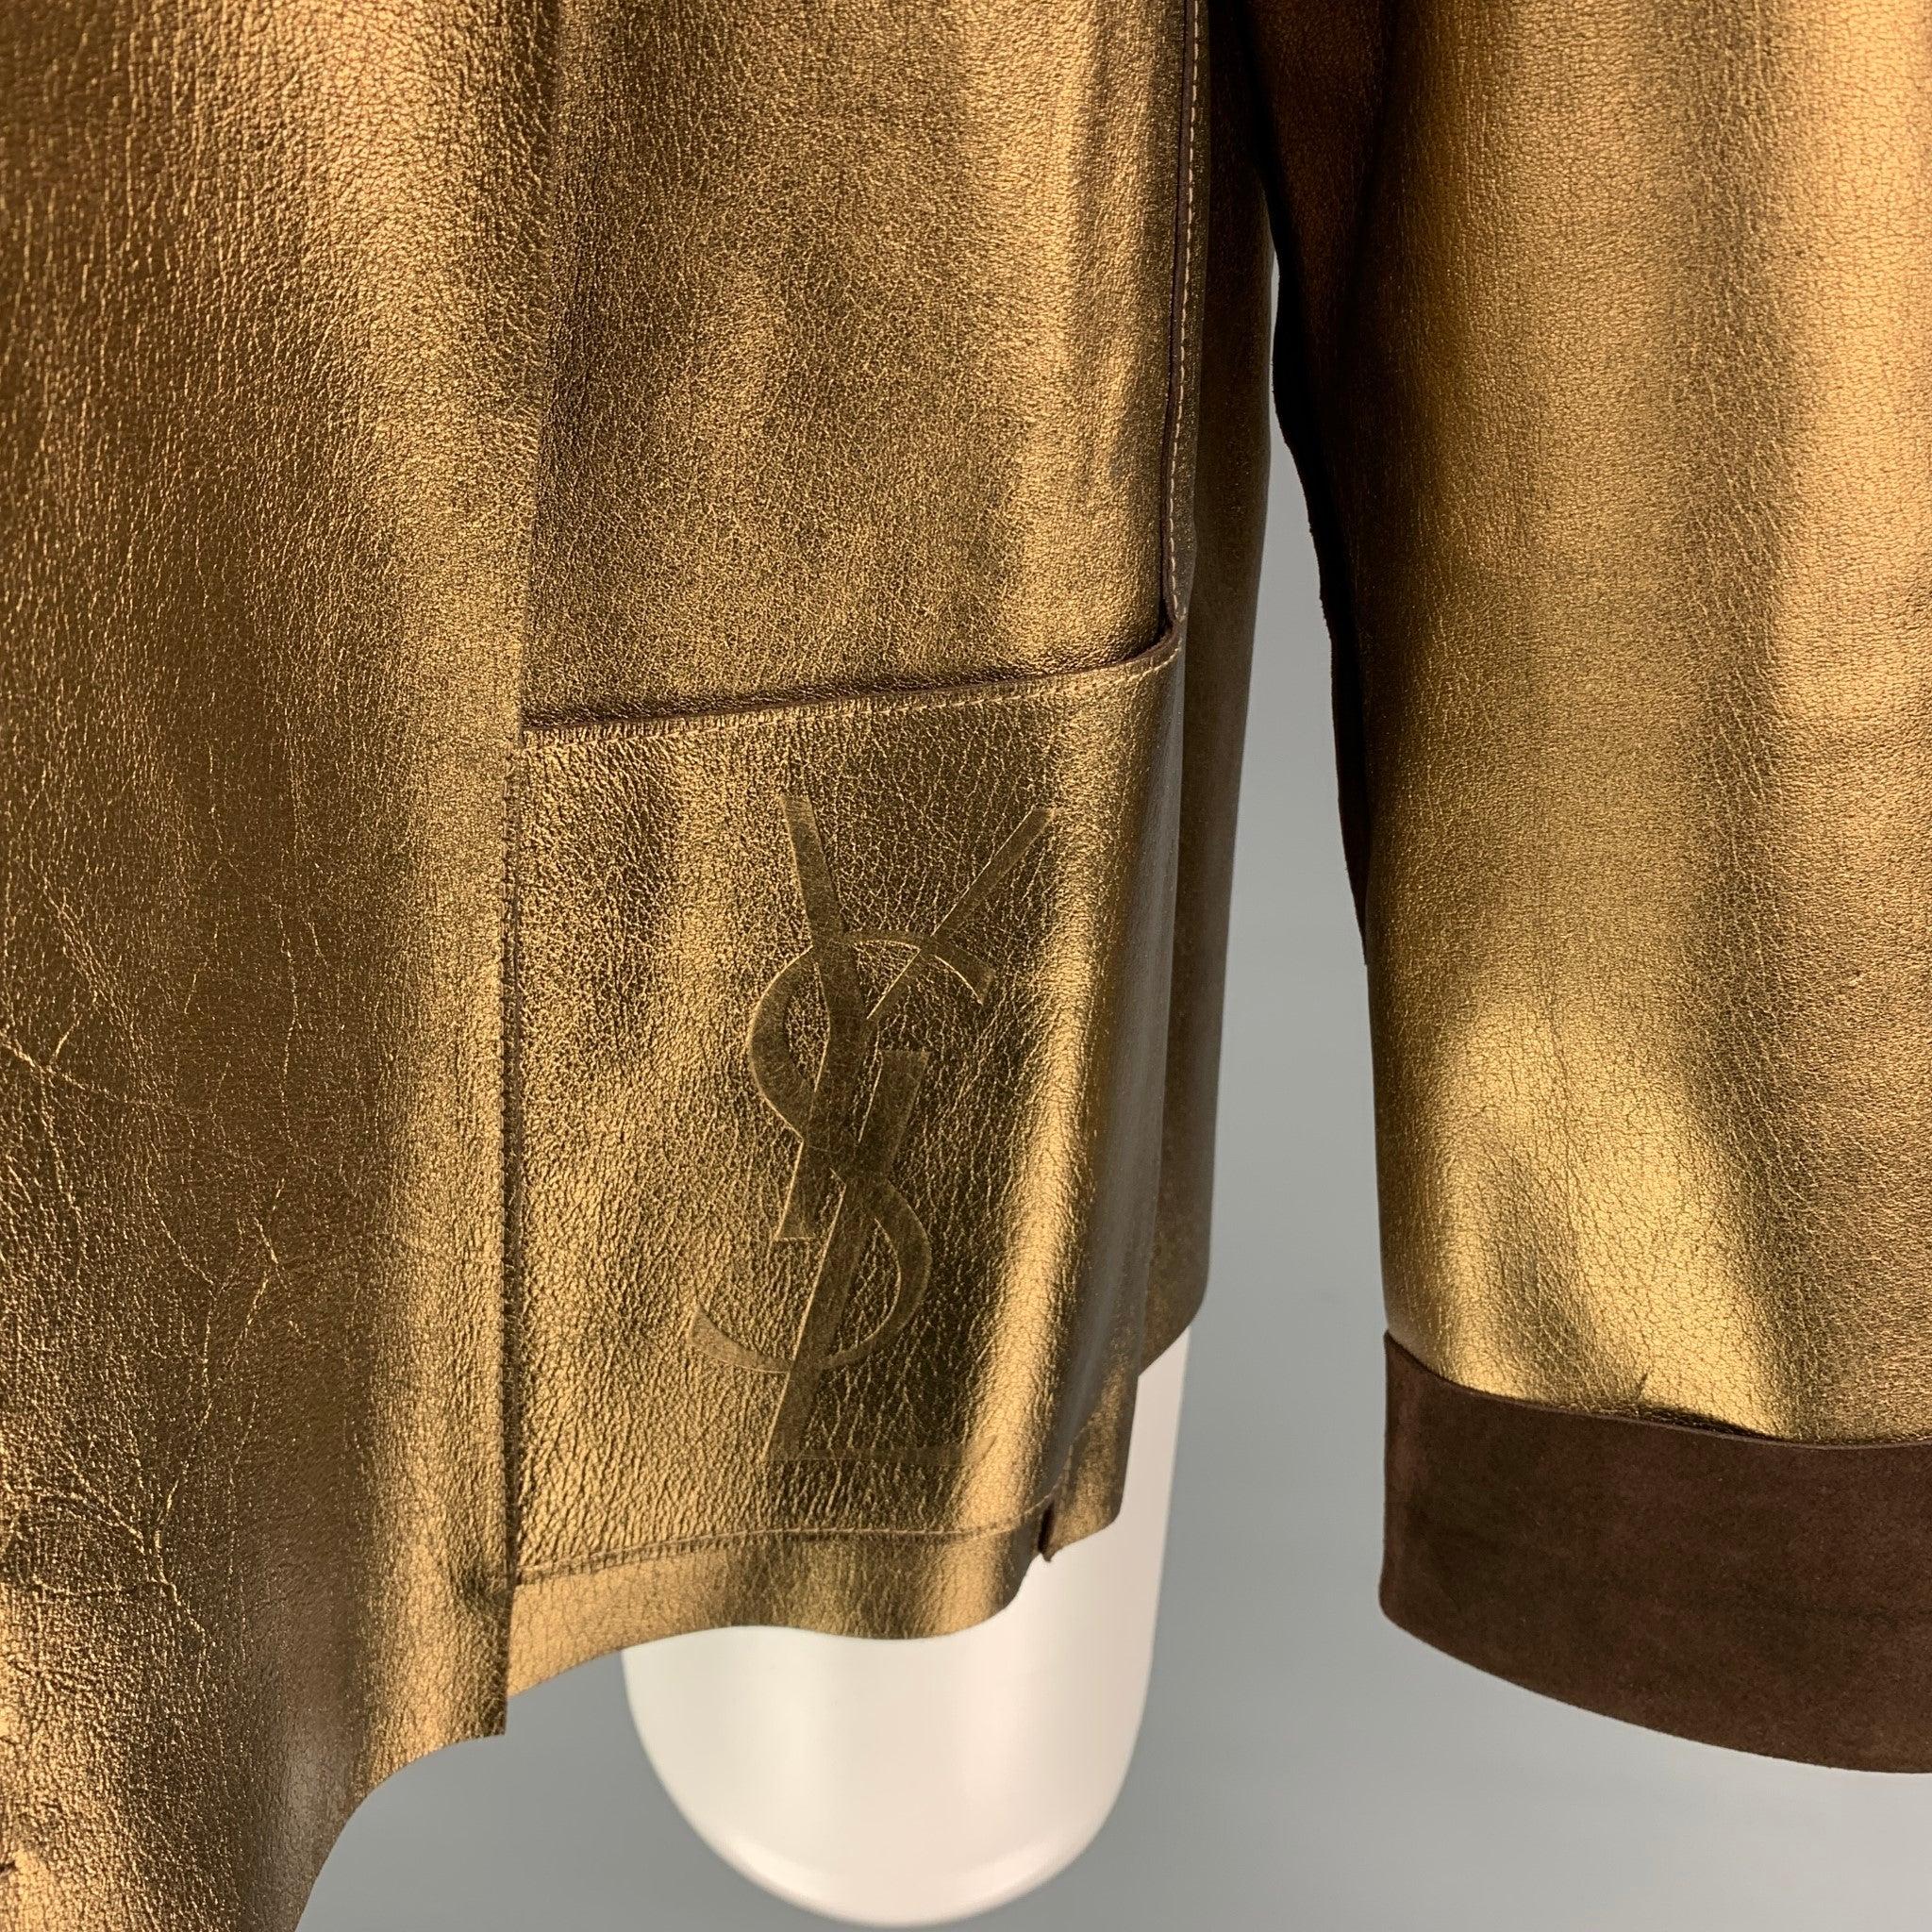 YVES SAINT LAUREN by TOM FORD Jacke aus goldfarbenem und braunem Leder mit wendbarem Stil, rohen Kanten, 